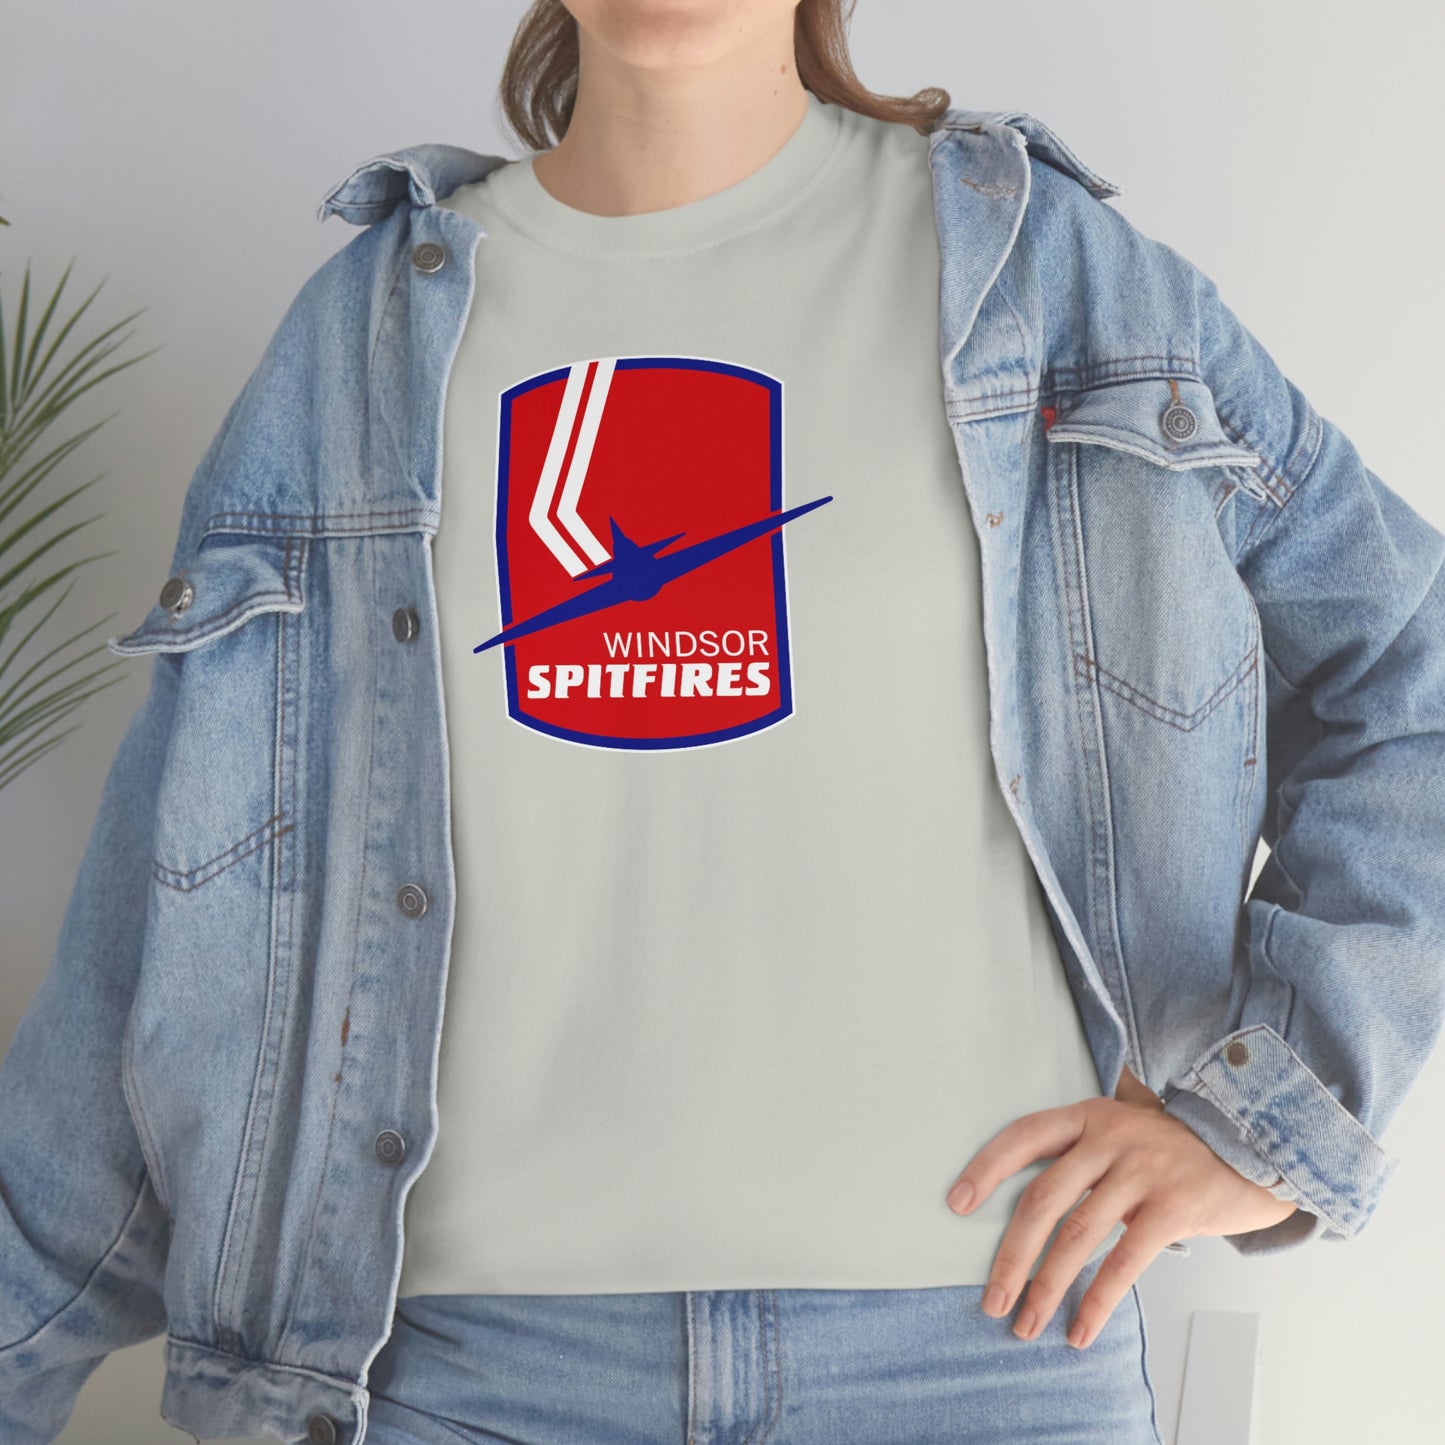 Windsor Spitfires T-Shirt